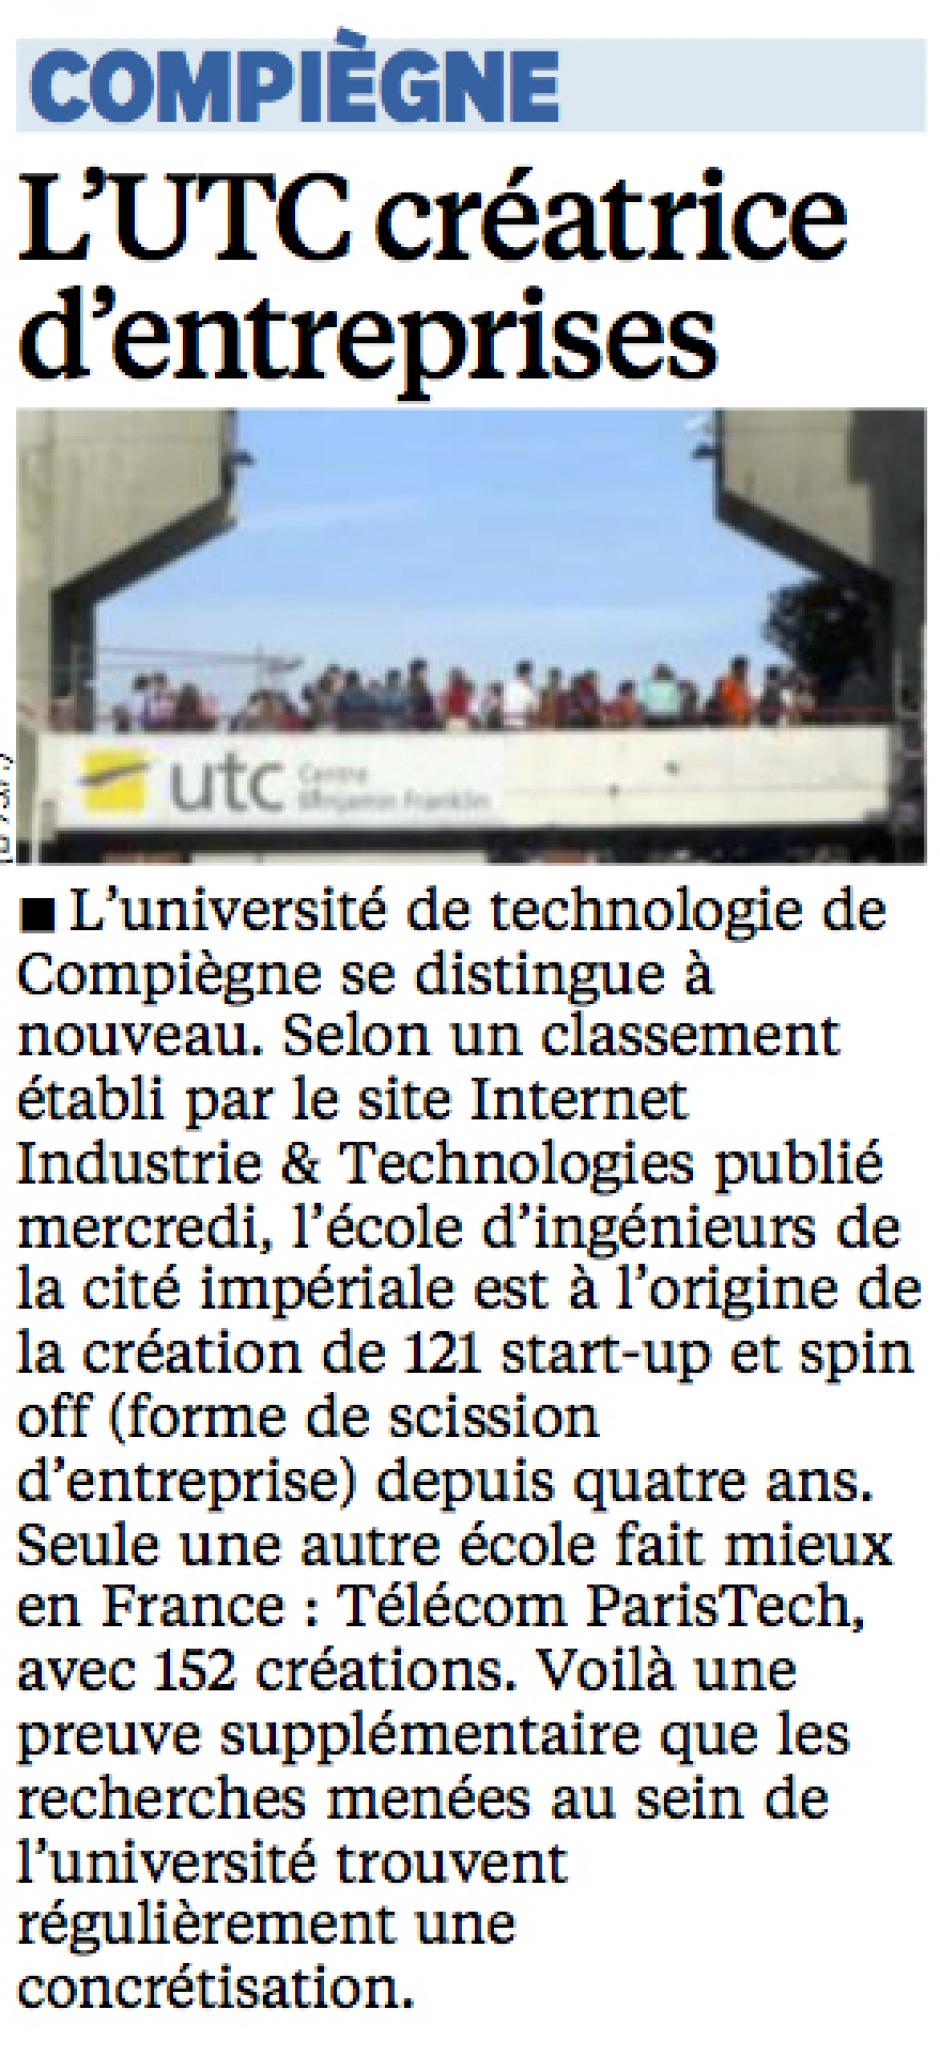 20140530-LeP-Compiègne-L'UTC créatrice d'entreprises